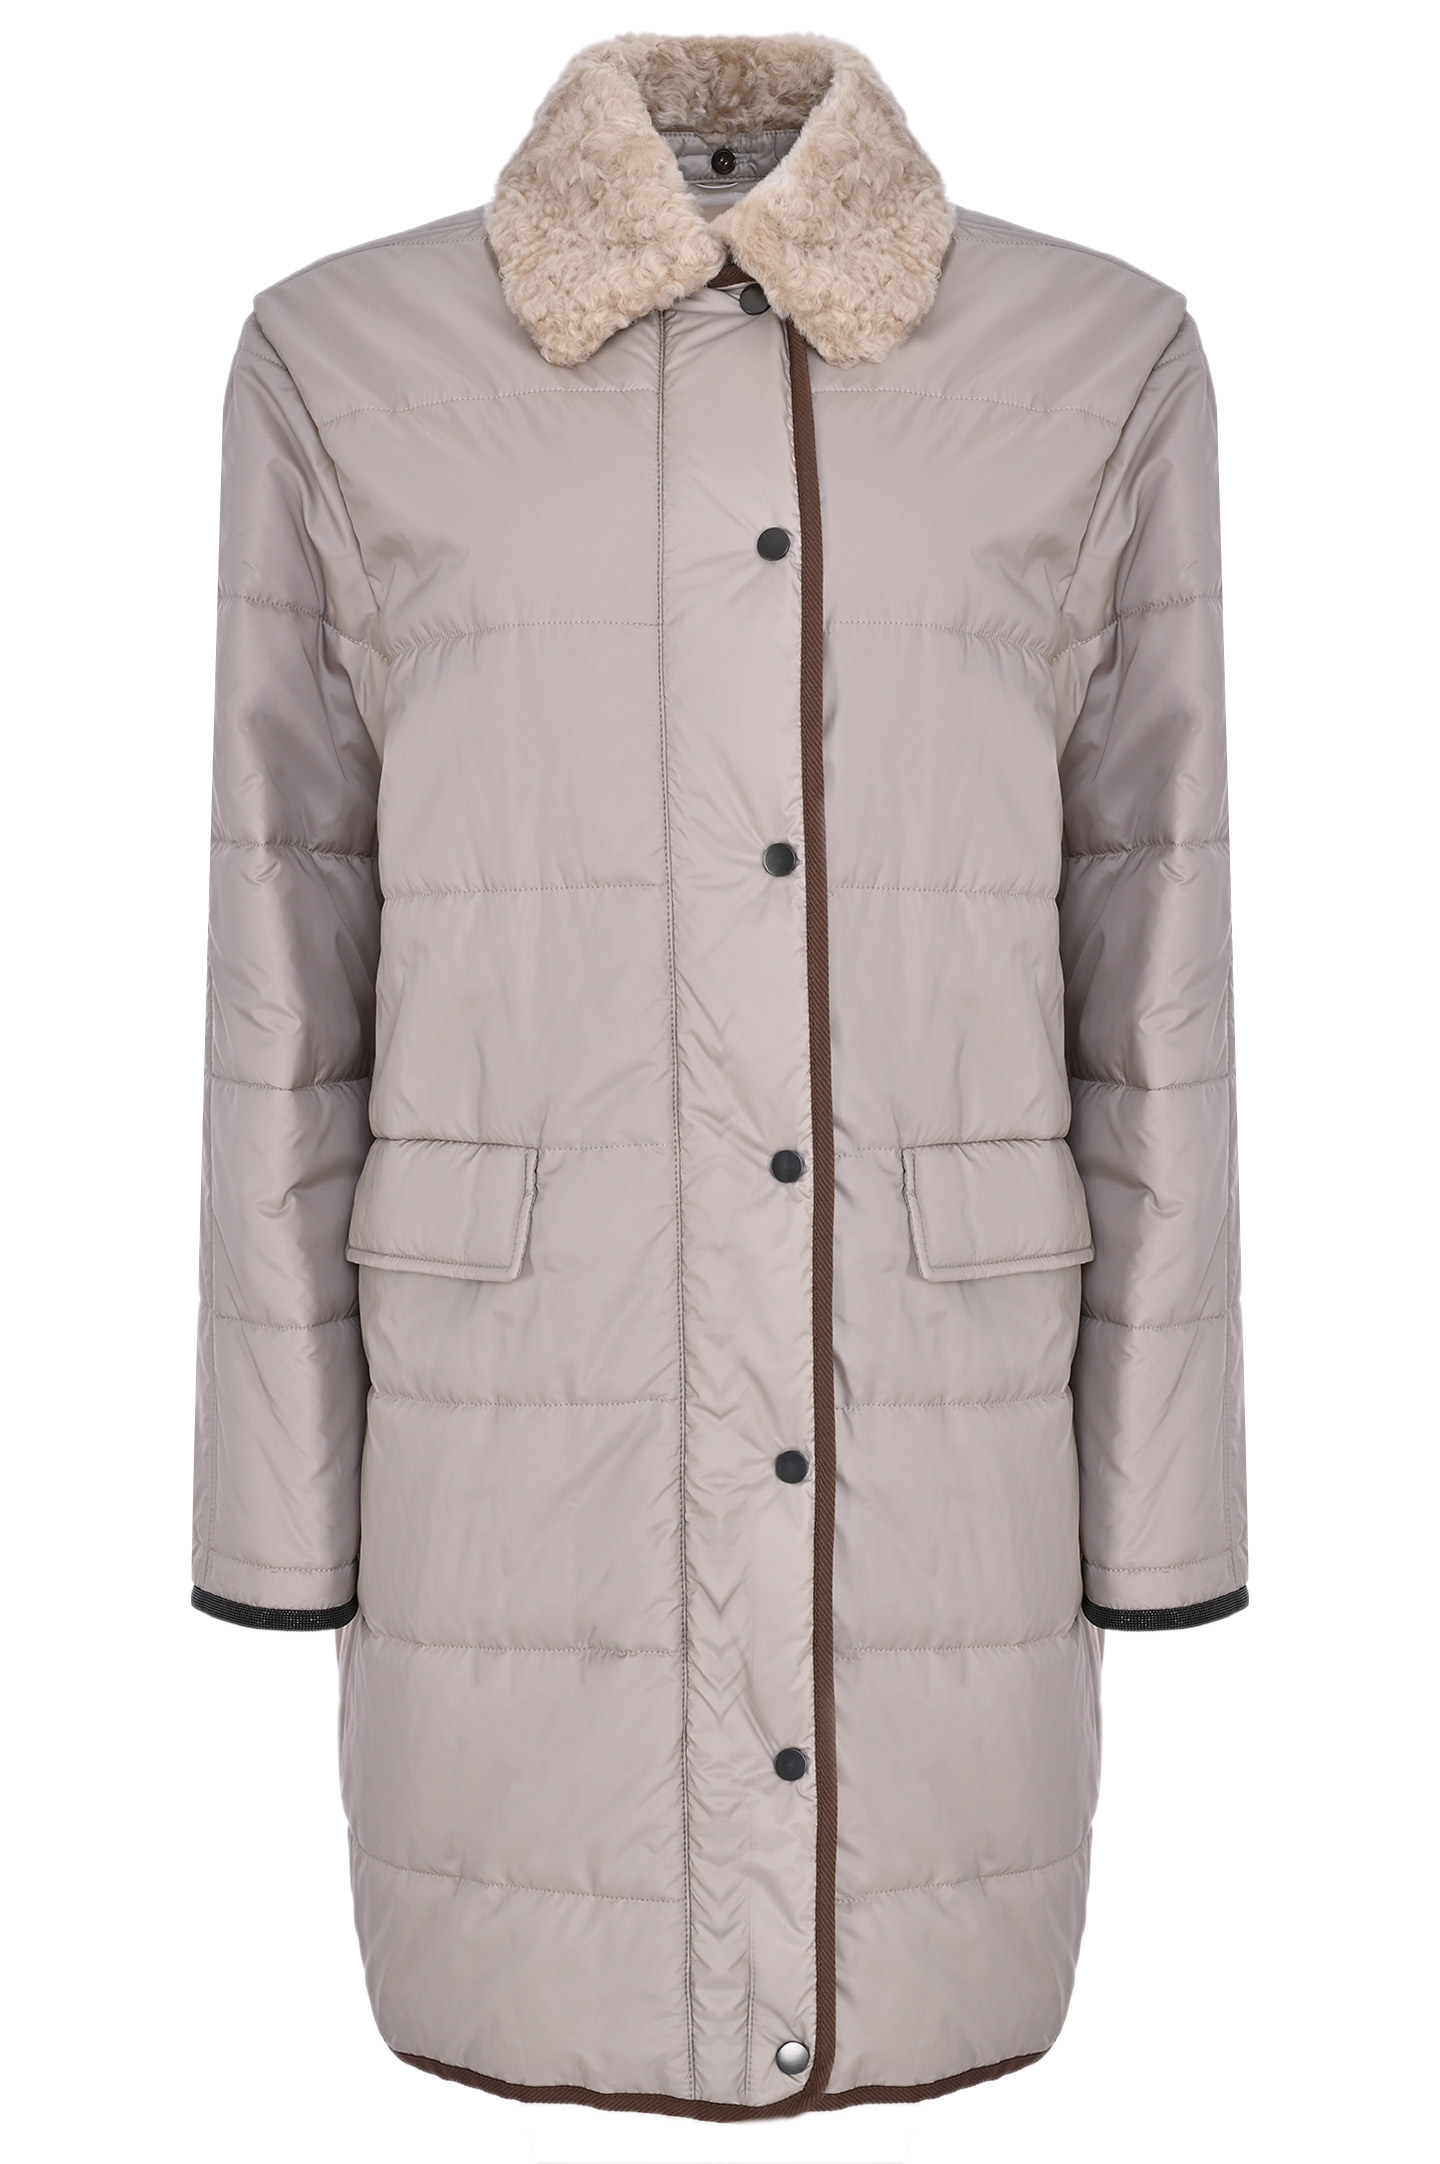 Куртка BRUNELLO  CUCINELLI MH5049789P, цвет: Светло-бежевый, Женский